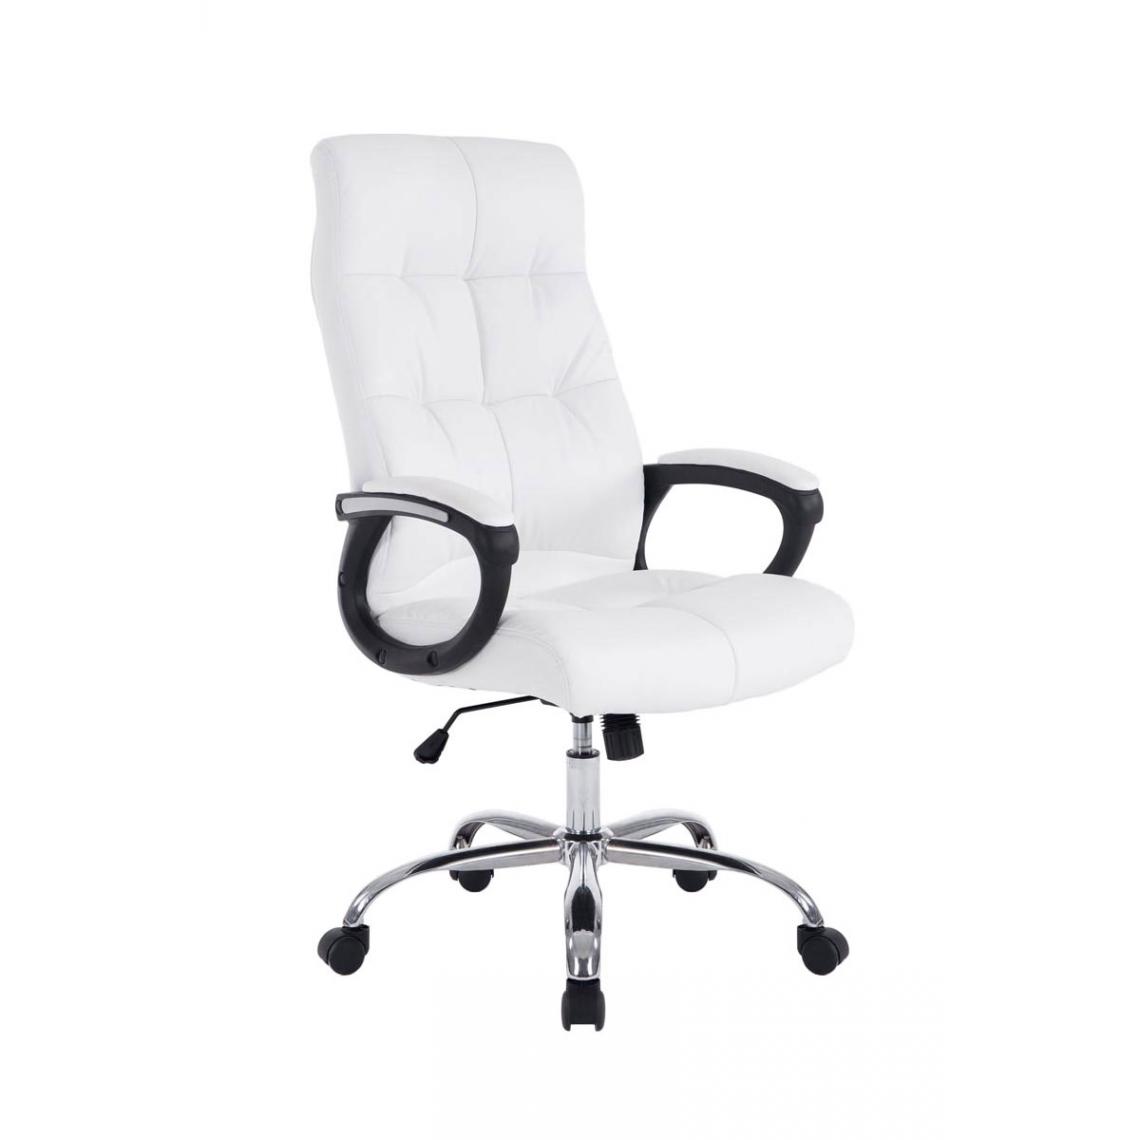 Icaverne - Admirable Chaise de bureau edition Pretoria couleur blanc - Chaises